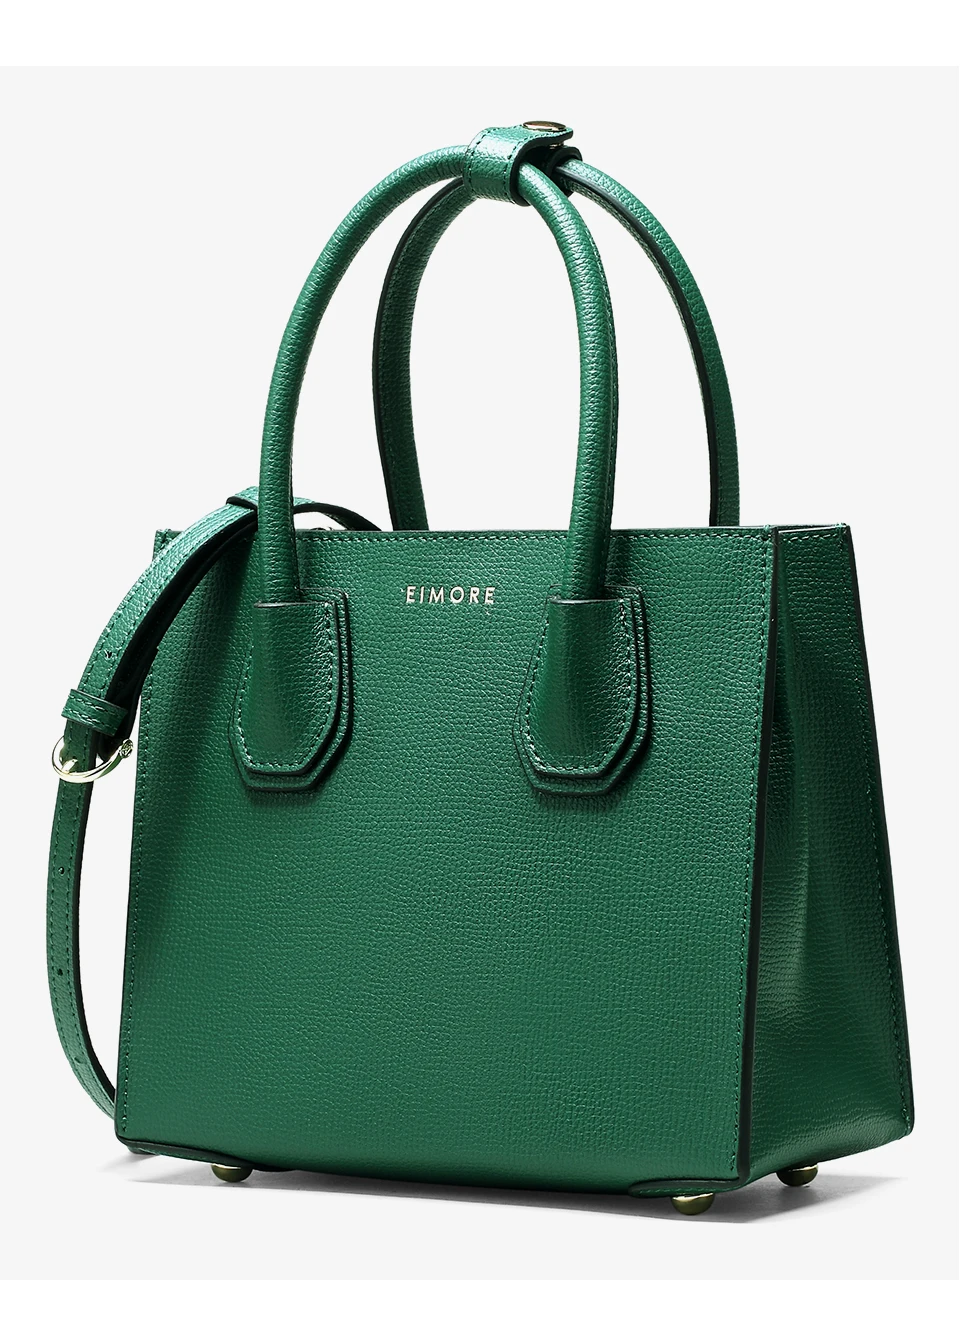 EIMORE nouveau Designer sac à main femmes sacs en cuir véritable marque célèbre femme sacs à bandoulière de haute qualité femmes sacs à main de luxe